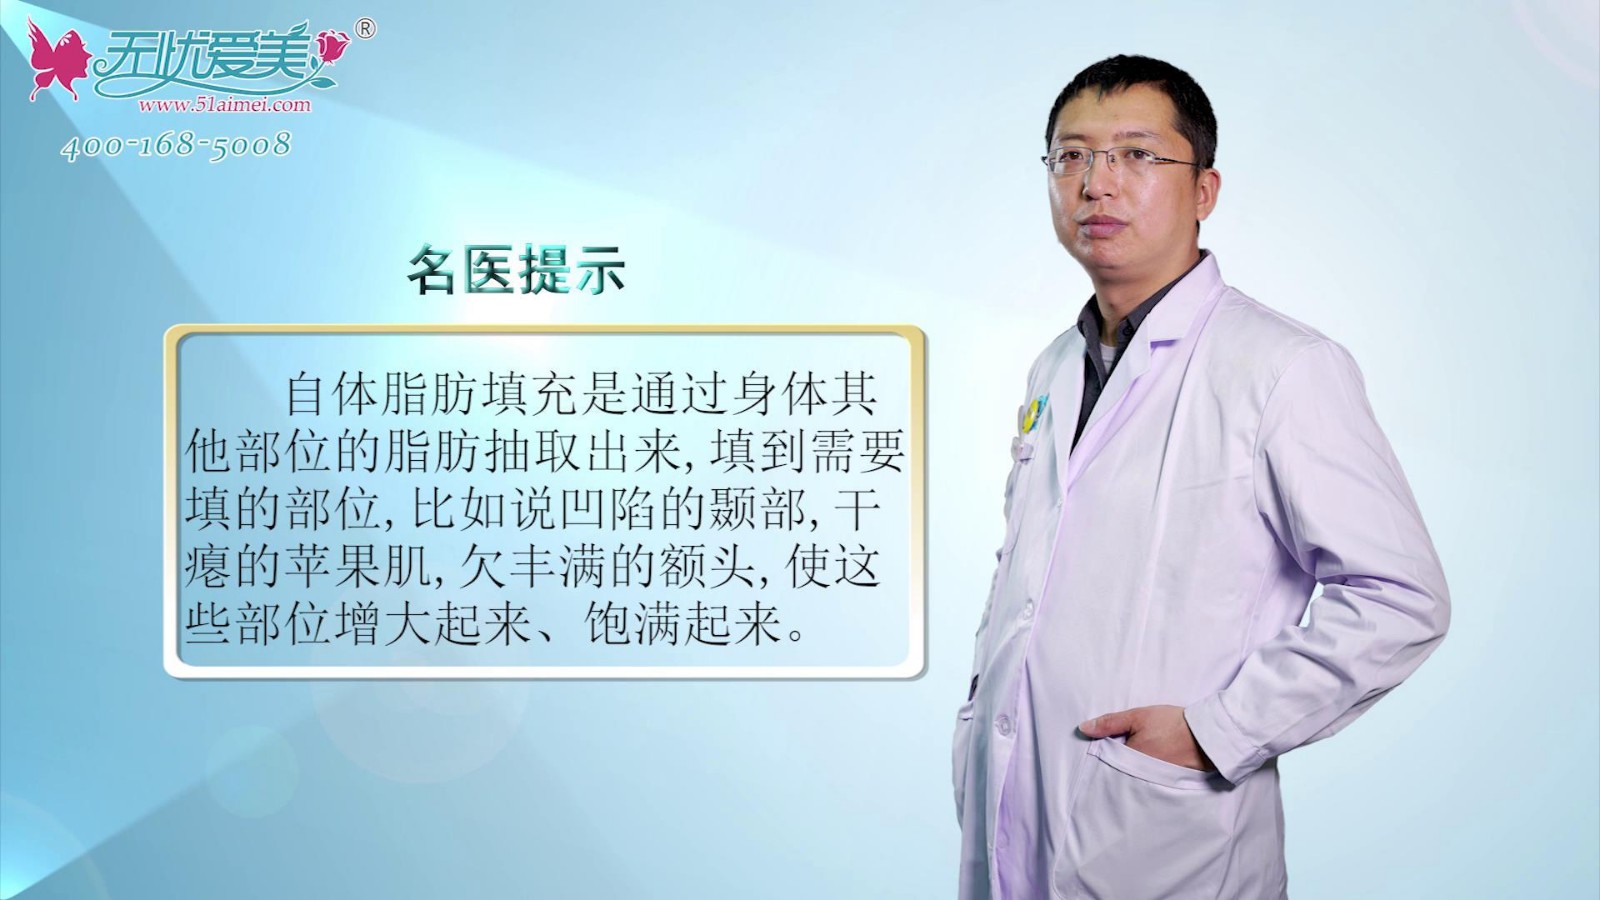 什么是自体脂肪填充?通过北京海医悦美李广学在线视频了解